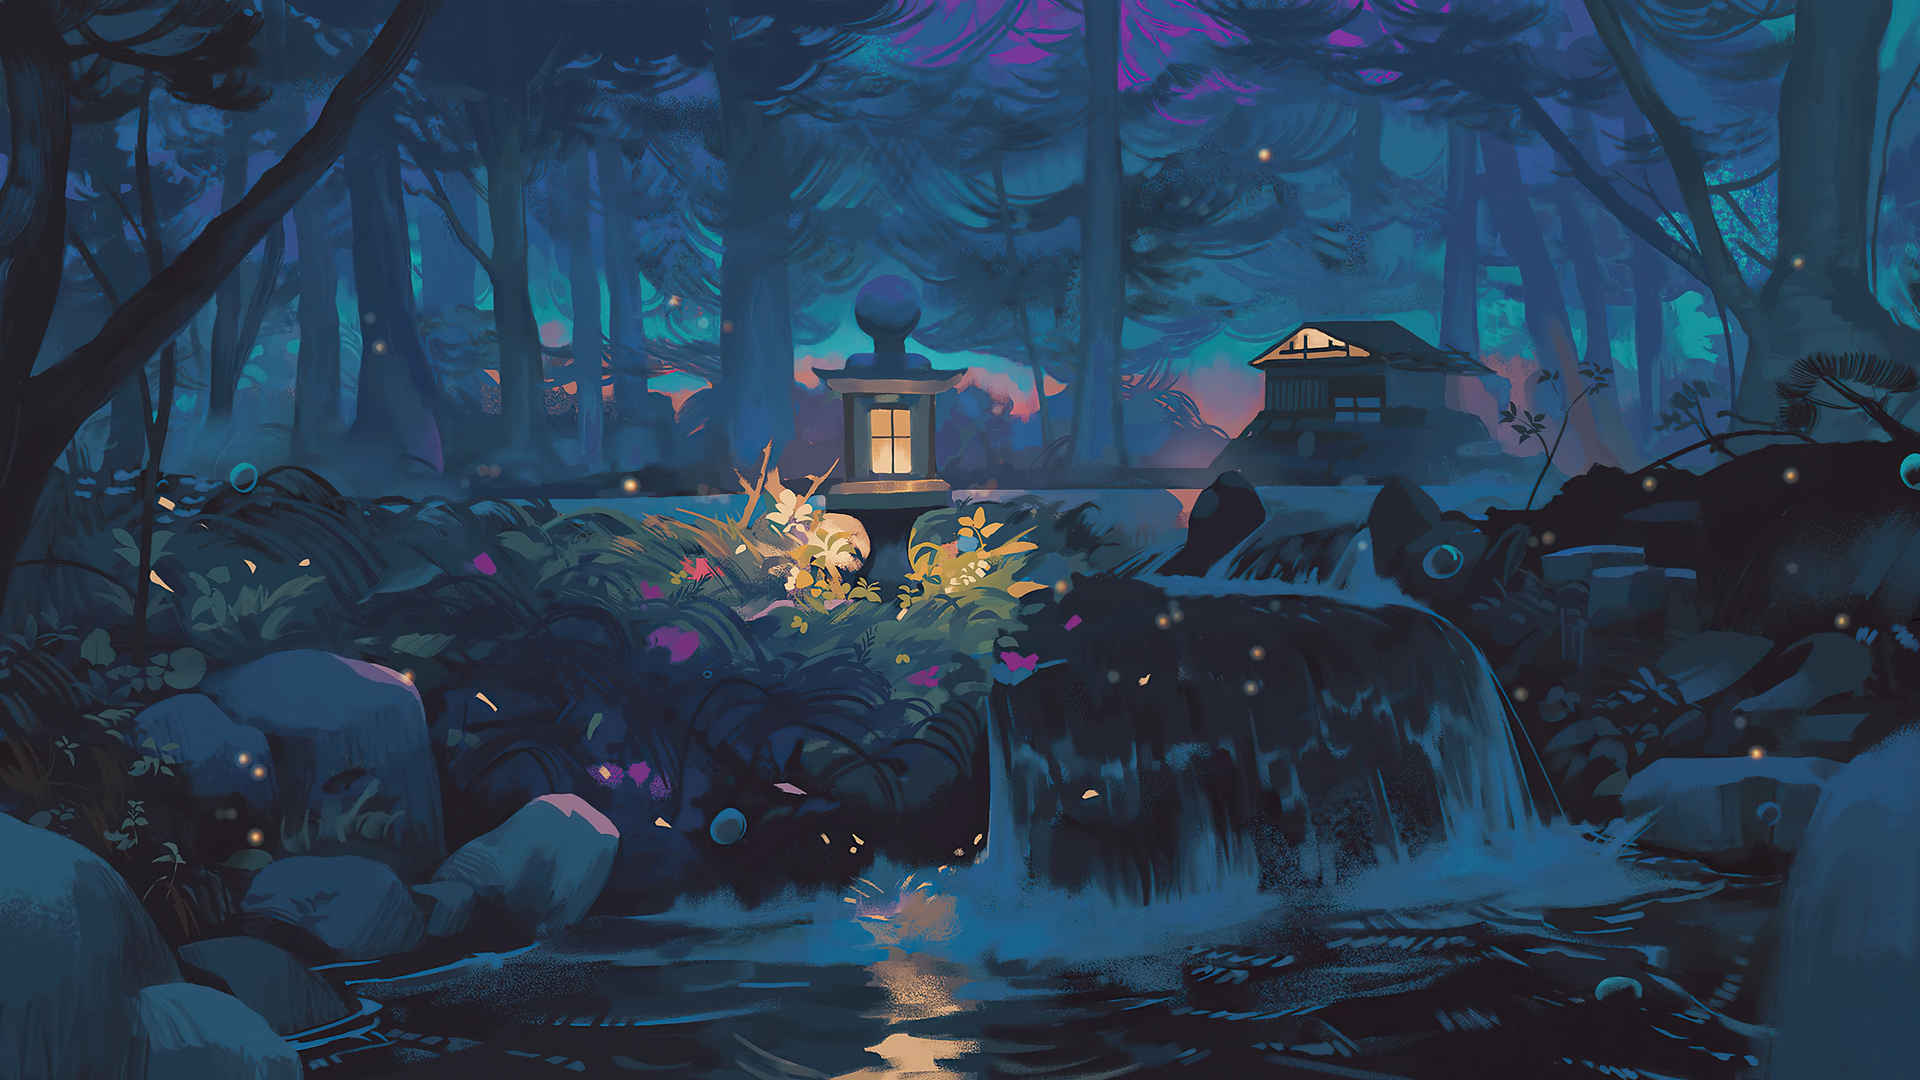 森林 夜晚 自然 树木 ˮ 房子 瀑布 灯 抽象艺术绘画风景4k壁纸